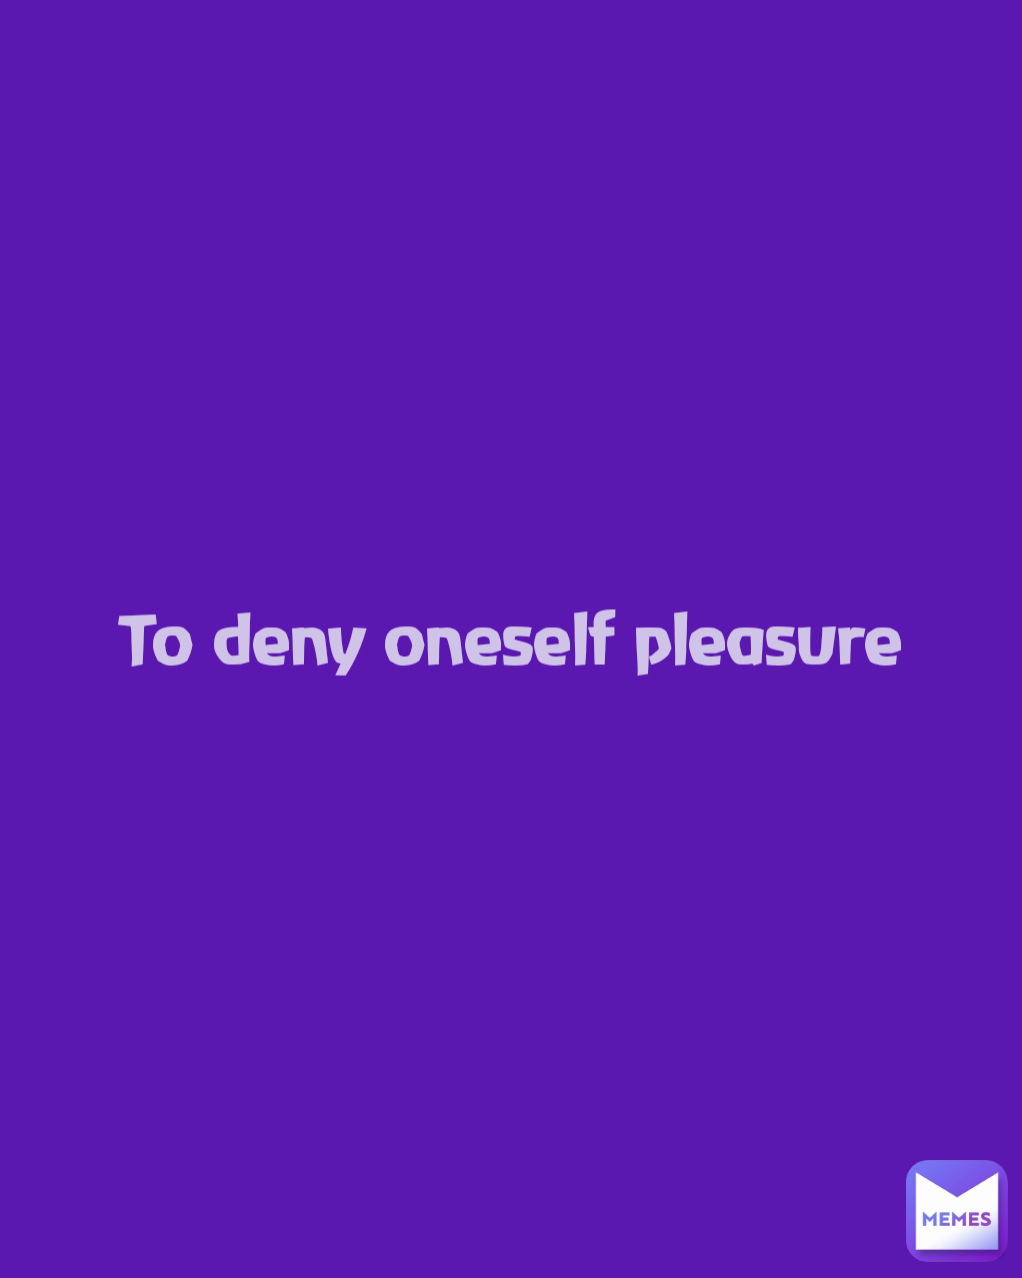 To deny oneself pleasure